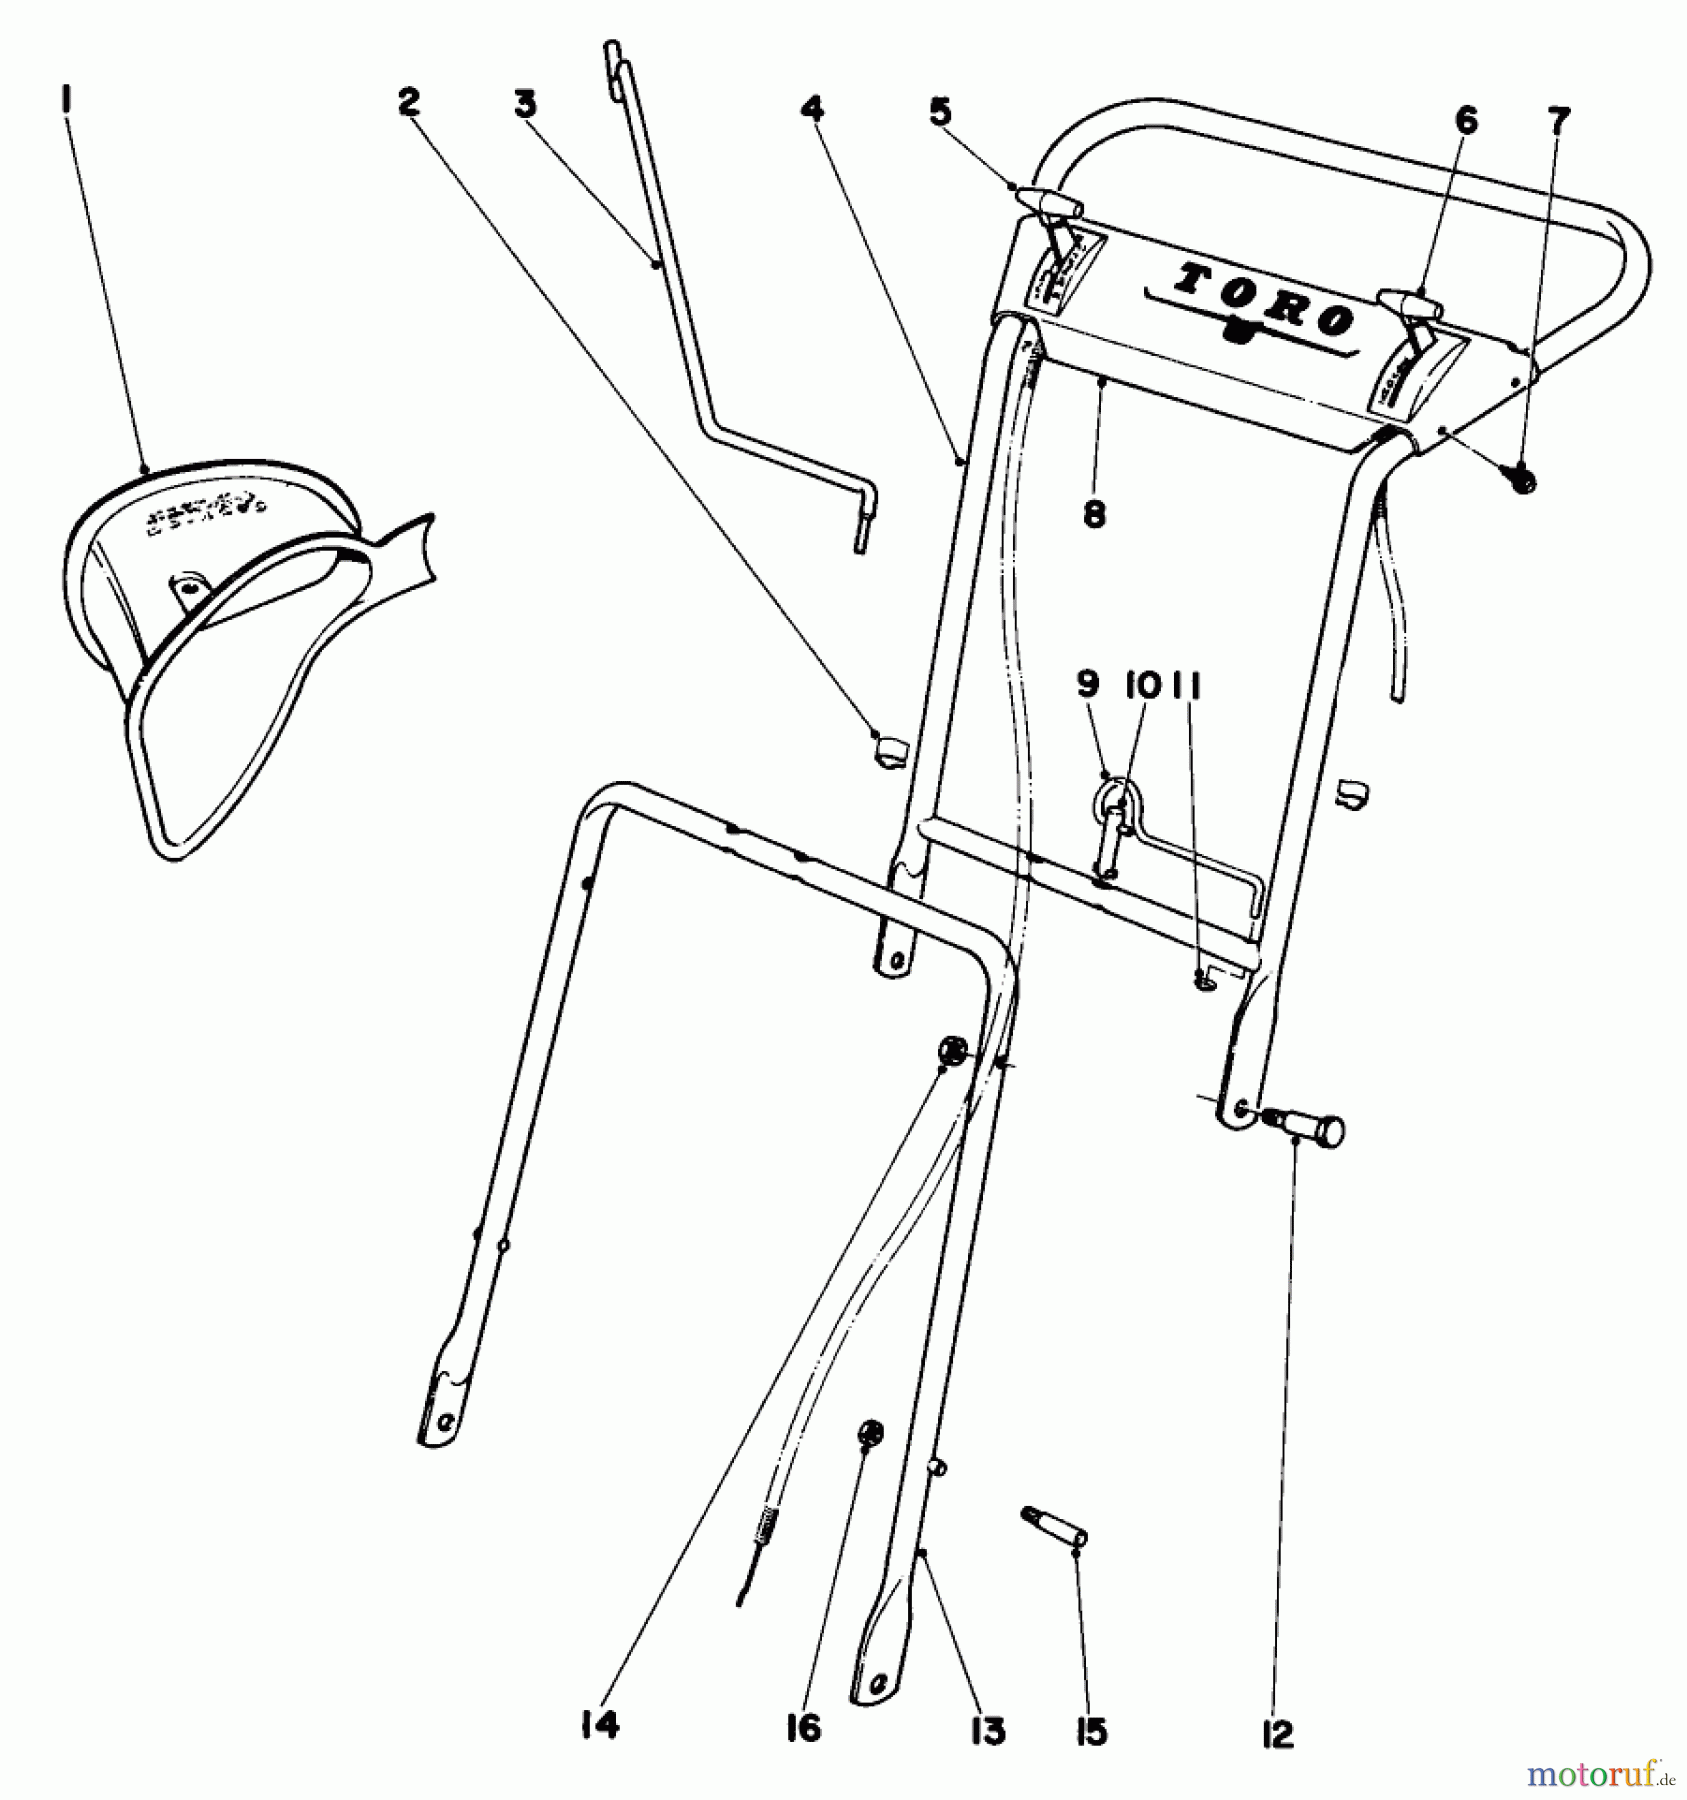  Toro Neu Mowers, Walk-Behind Seite 1 20227 - Toro Whirlwind Lawnmower, 1970 (0000001-0999999) FOLDING HANDLE